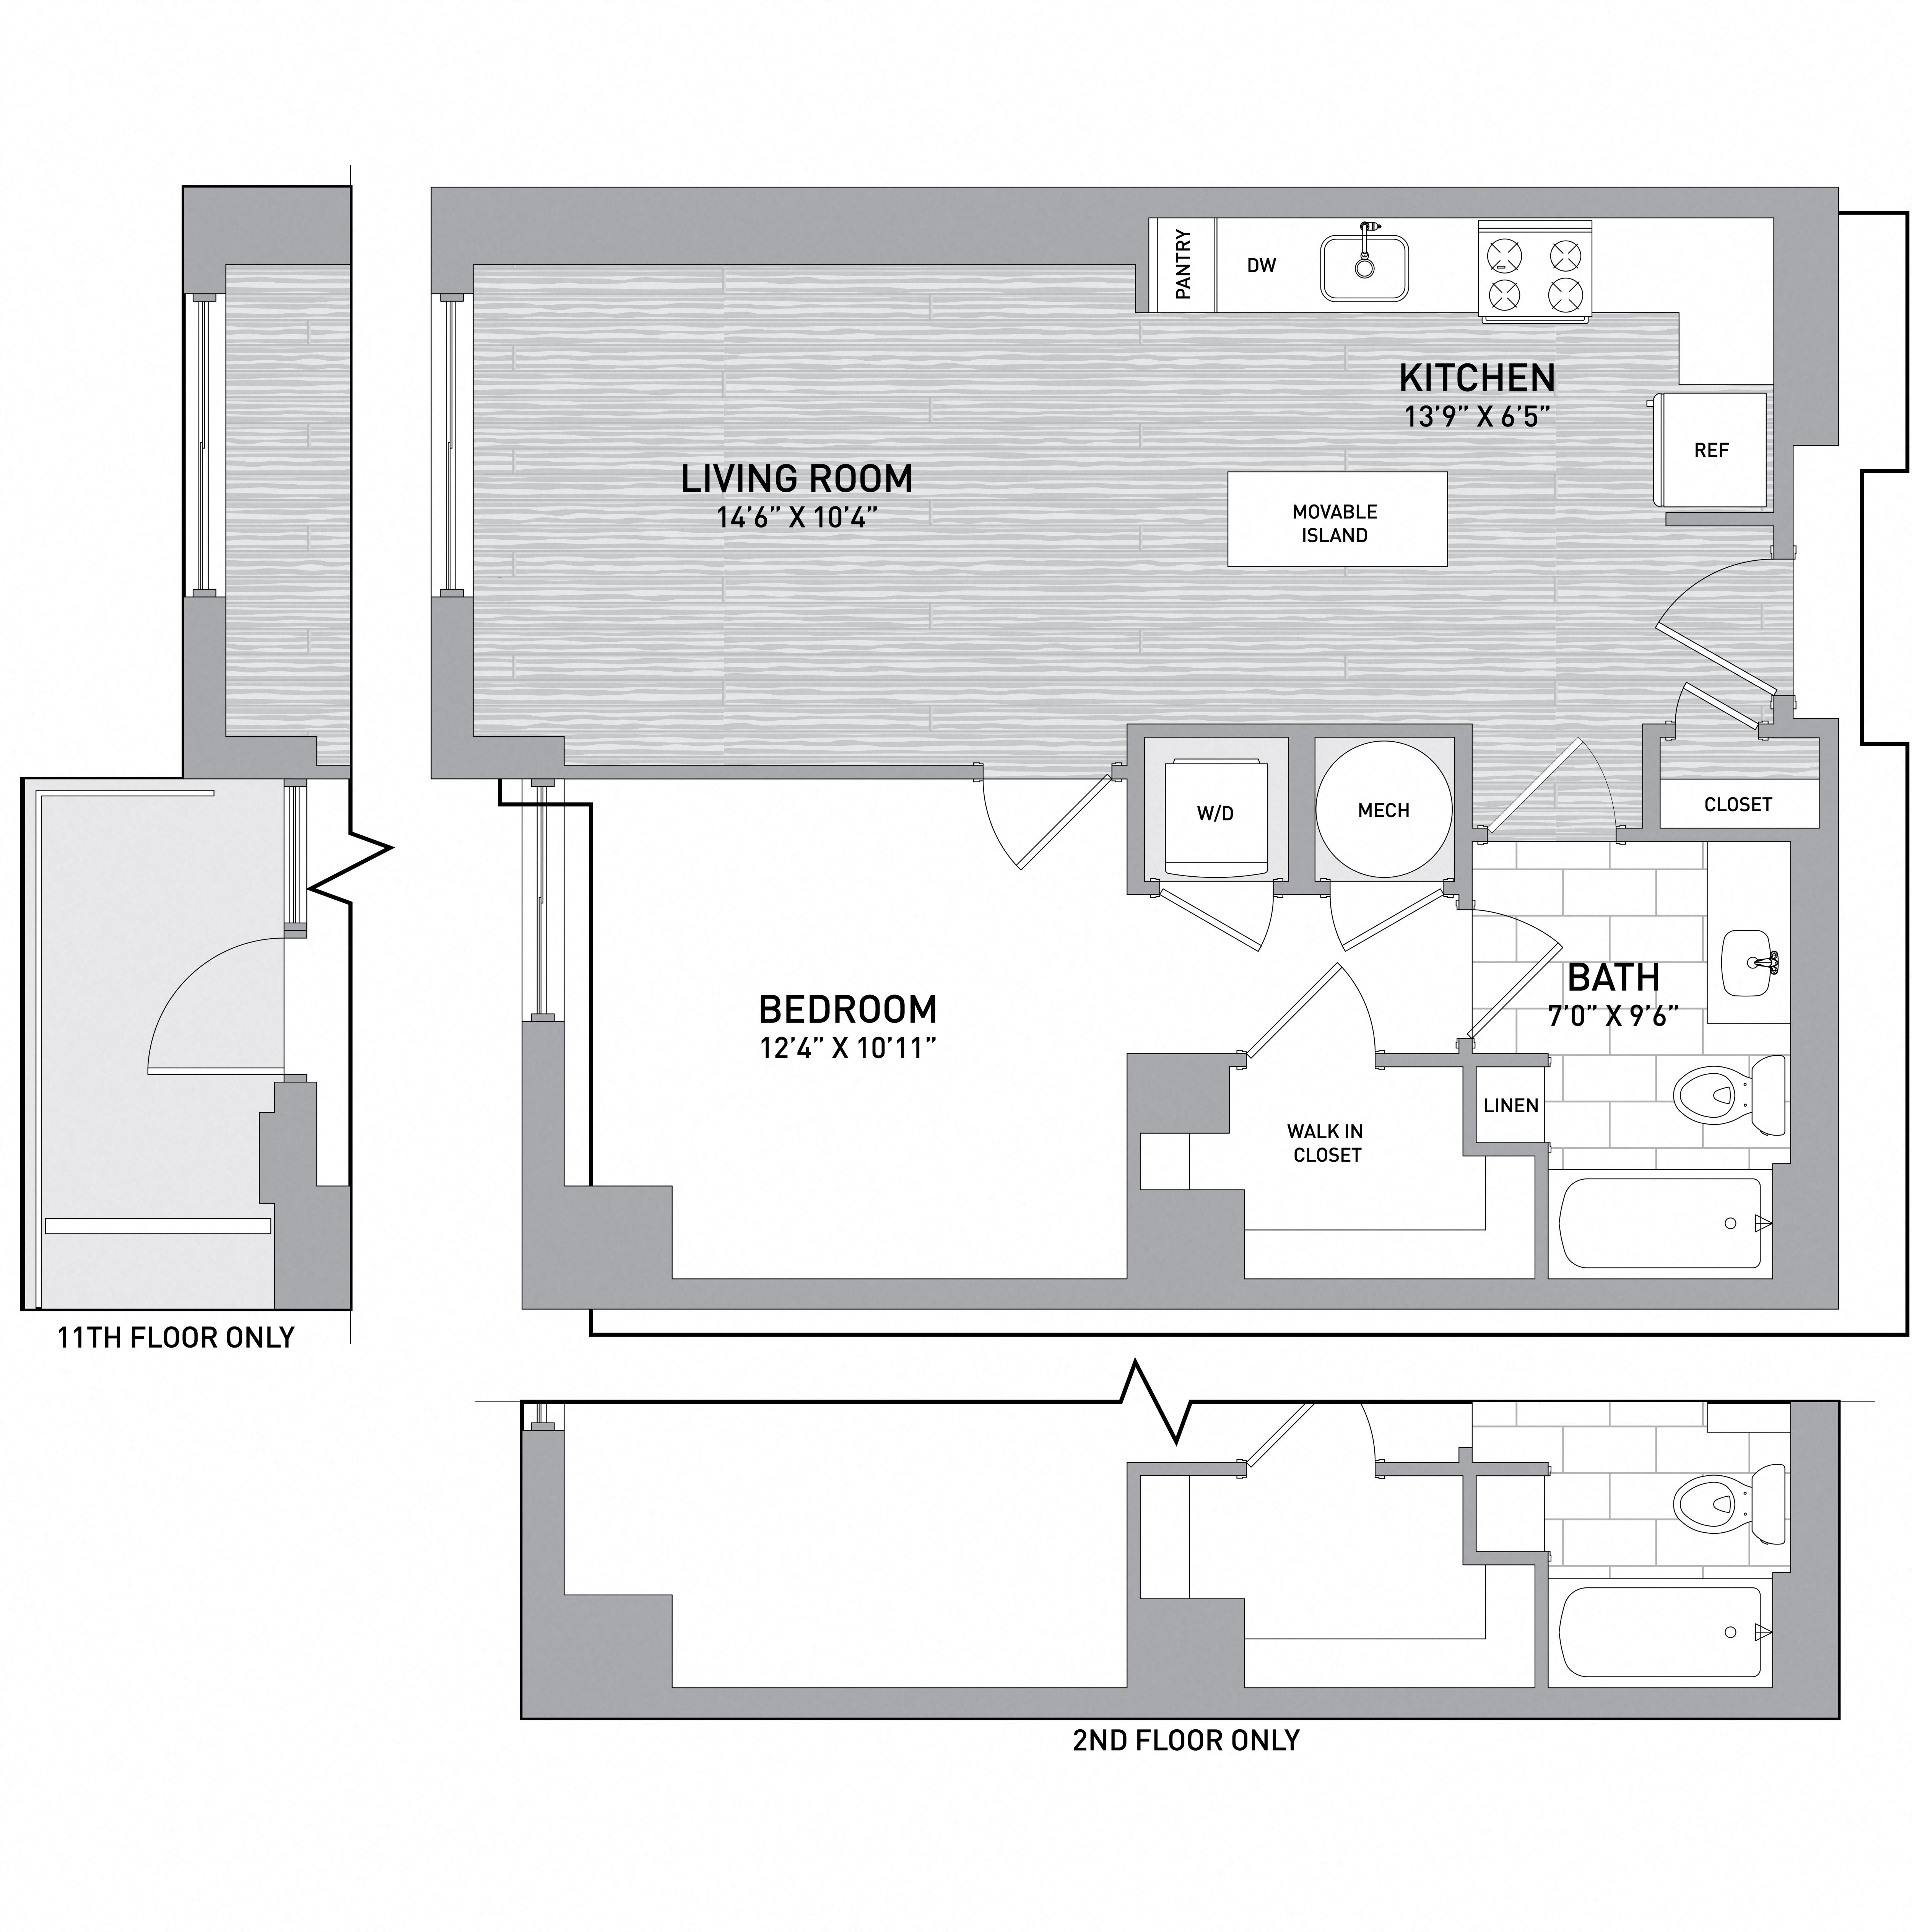 Floorplan Image of unit 151-0604